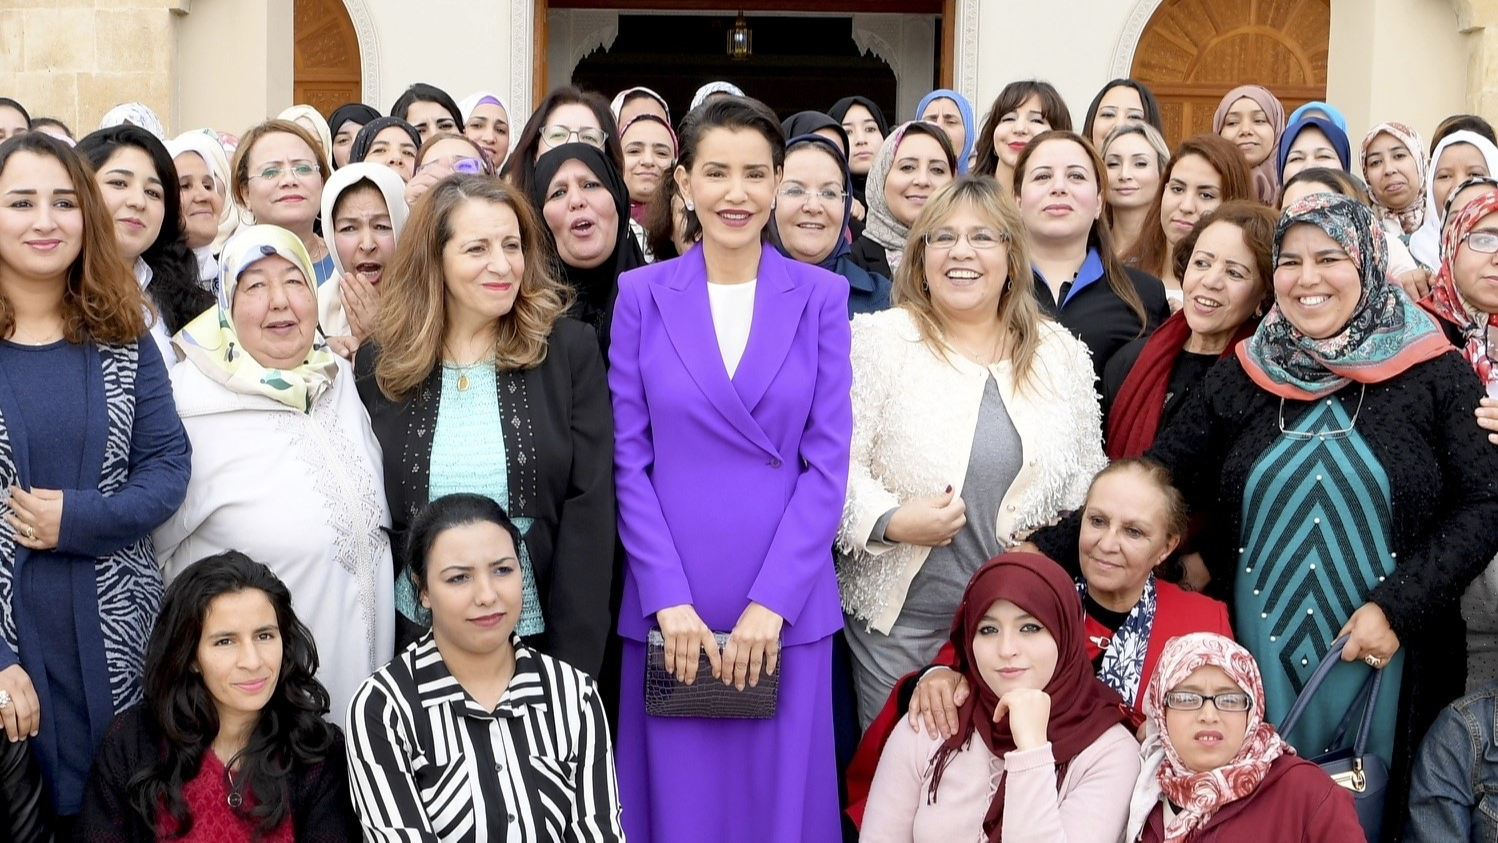 الاتحاد الوطني لنساء المغرب